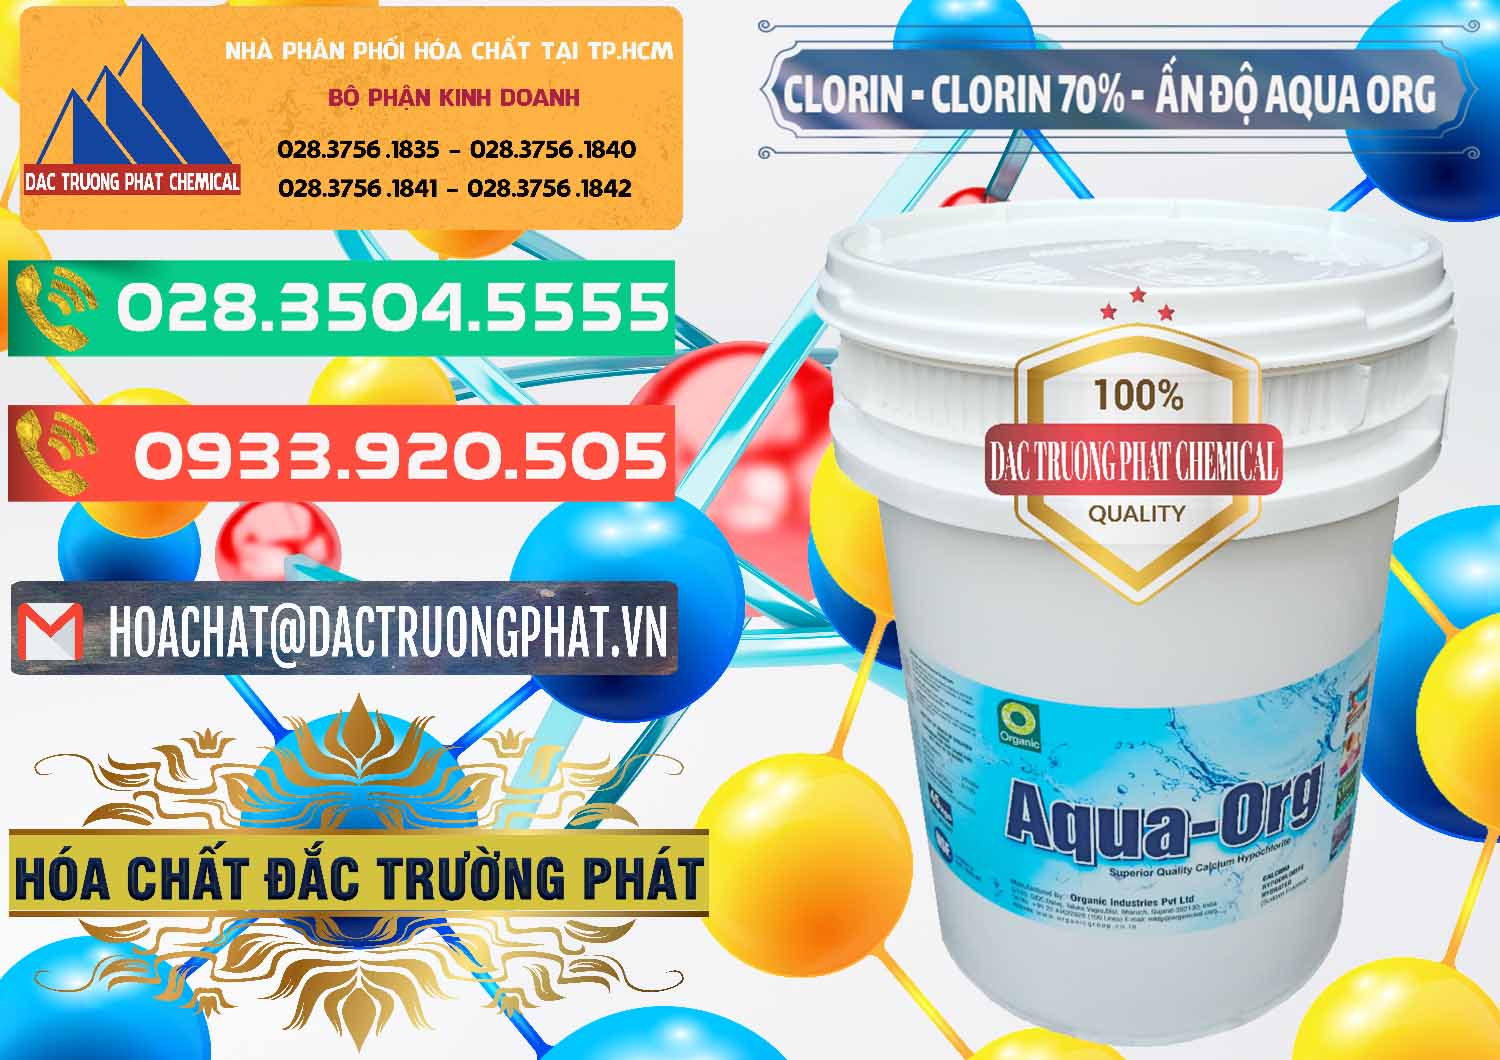 Cty bán & cung cấp Chlorine – Clorin Ấn Độ Aqua ORG Organic India - 0051 - Nơi phân phối - cung ứng hóa chất tại TP.HCM - congtyhoachat.com.vn